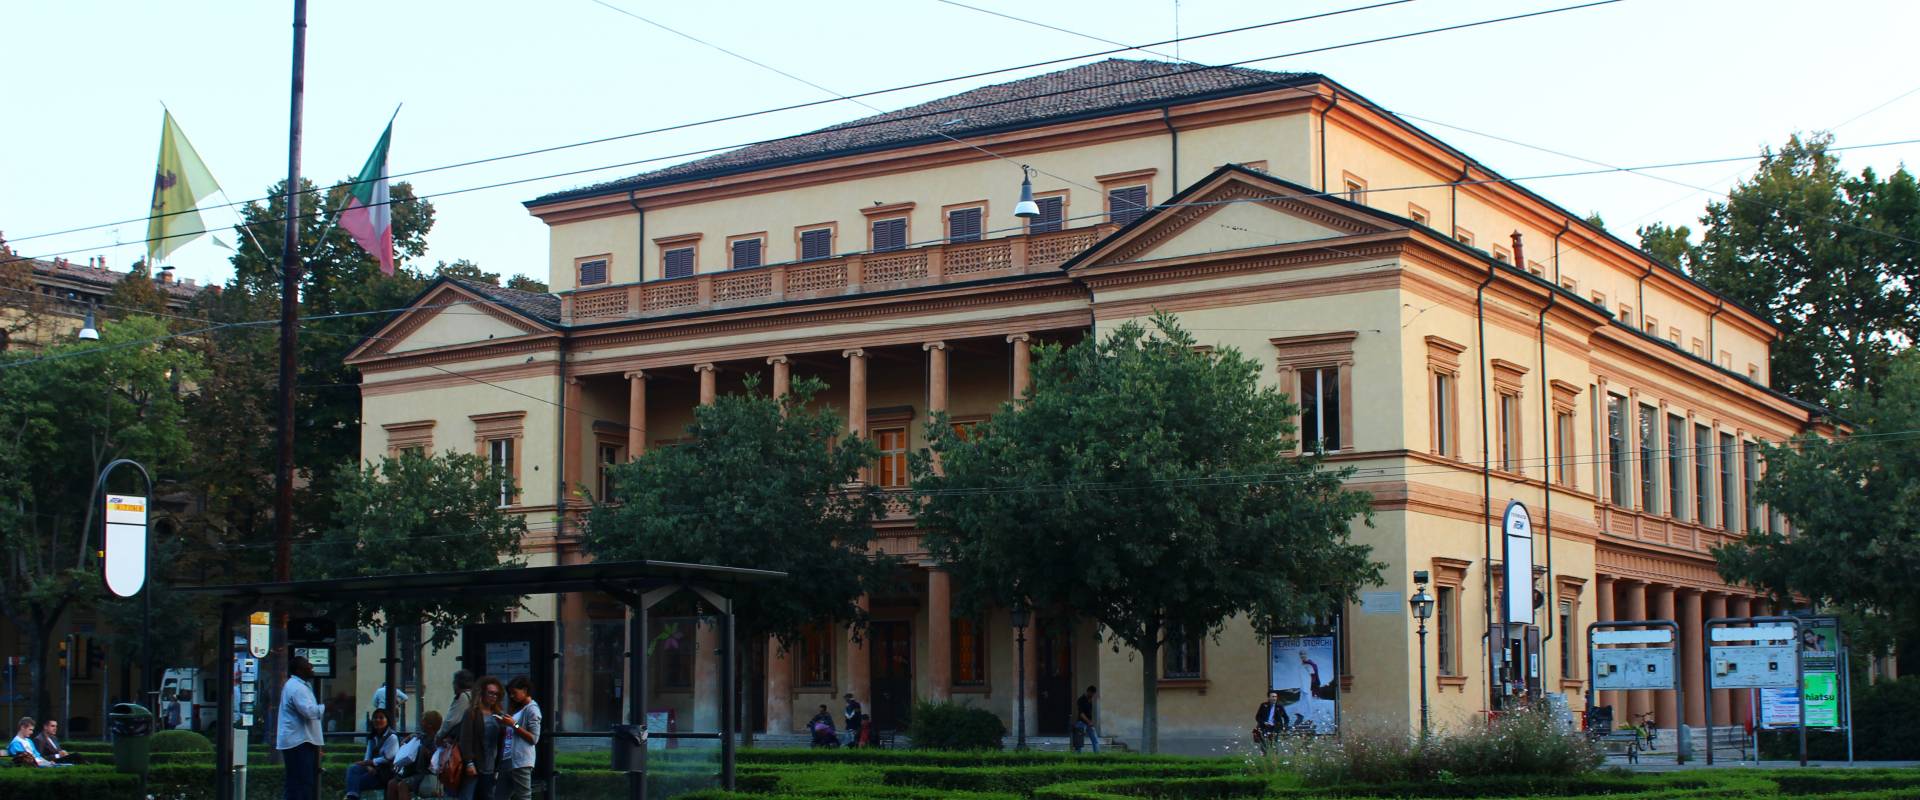 Teatro Storchi Modena foto di BeaDominianni